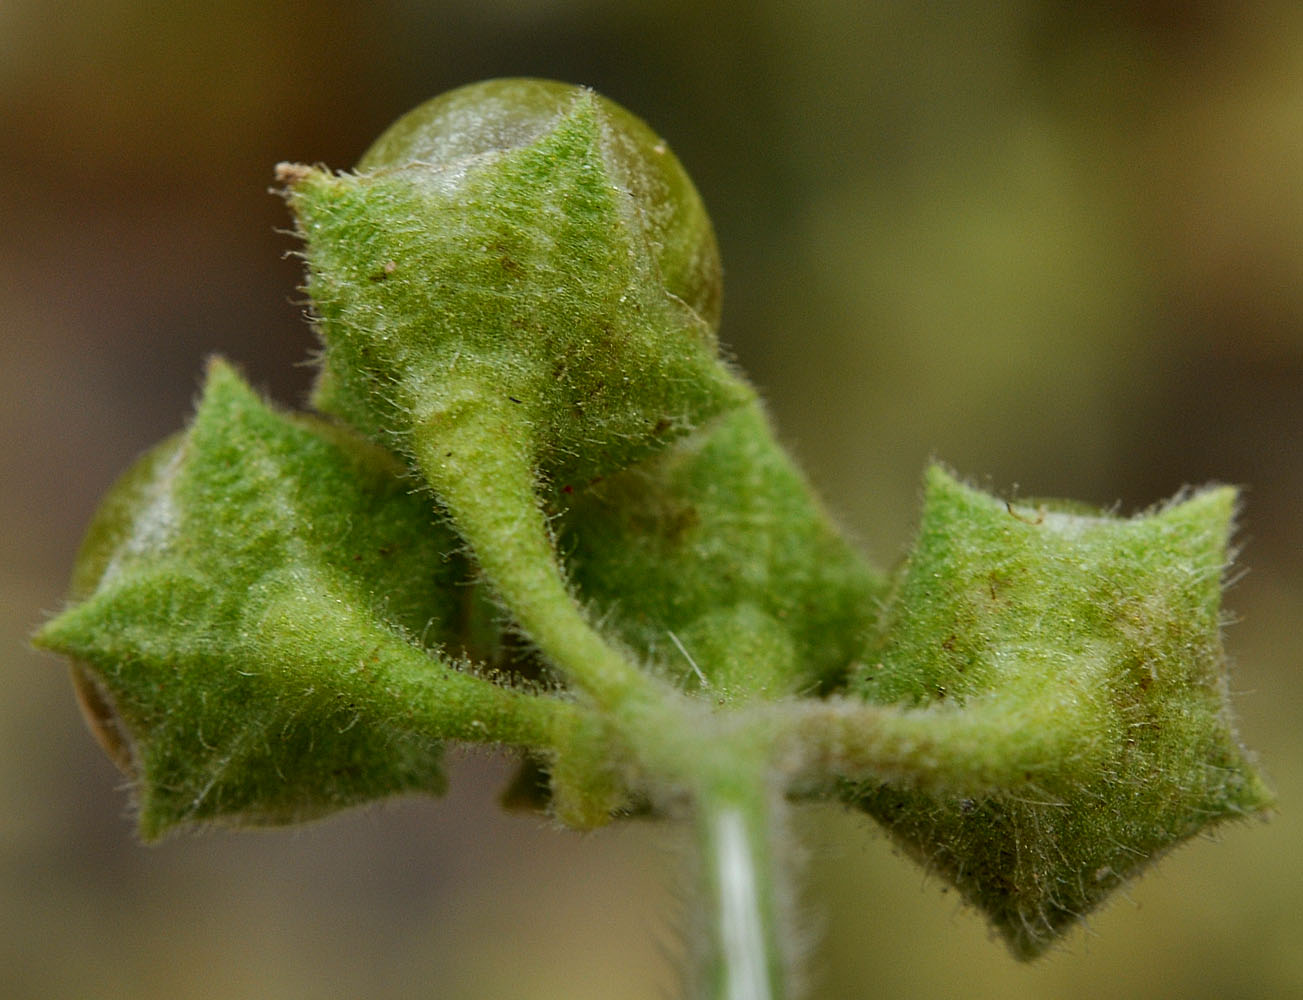 Flora of Eastern Washington Image: Solanum physalifolium